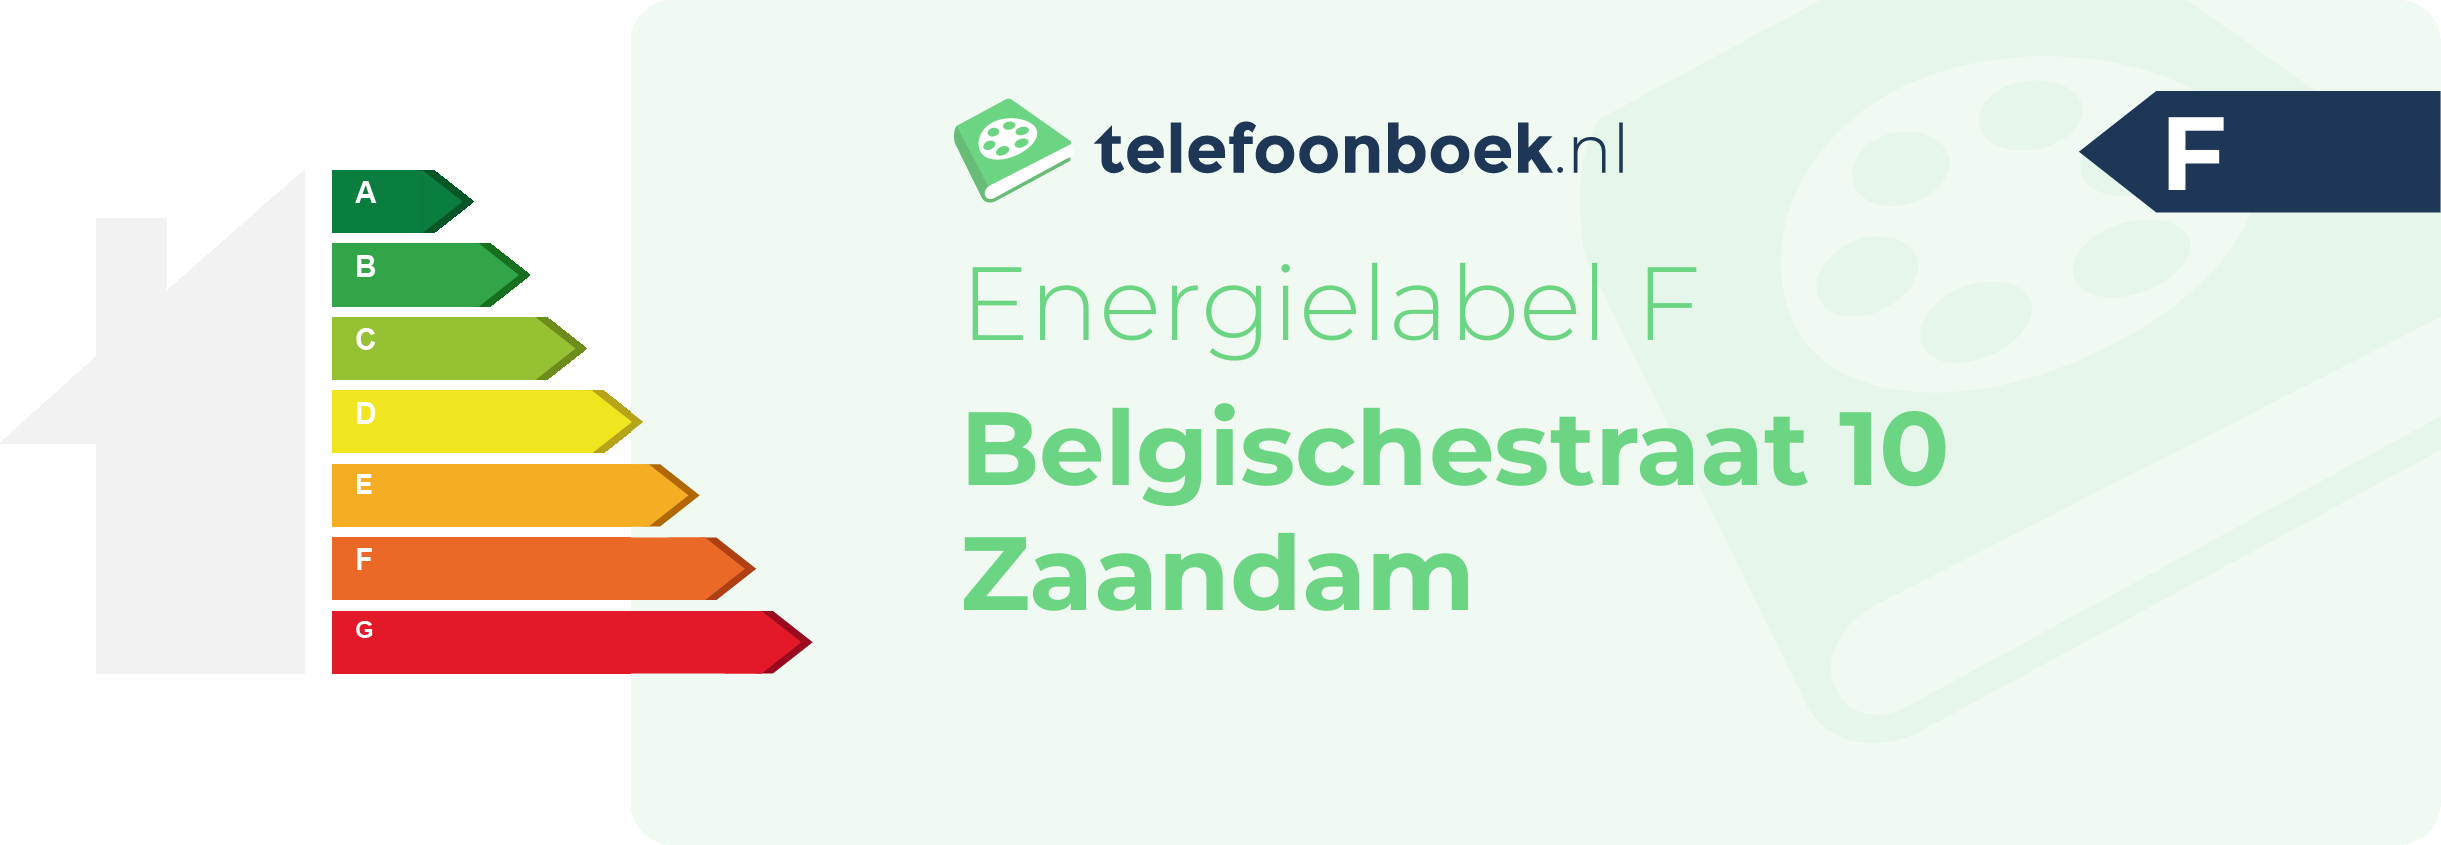 Energielabel Belgischestraat 10 Zaandam